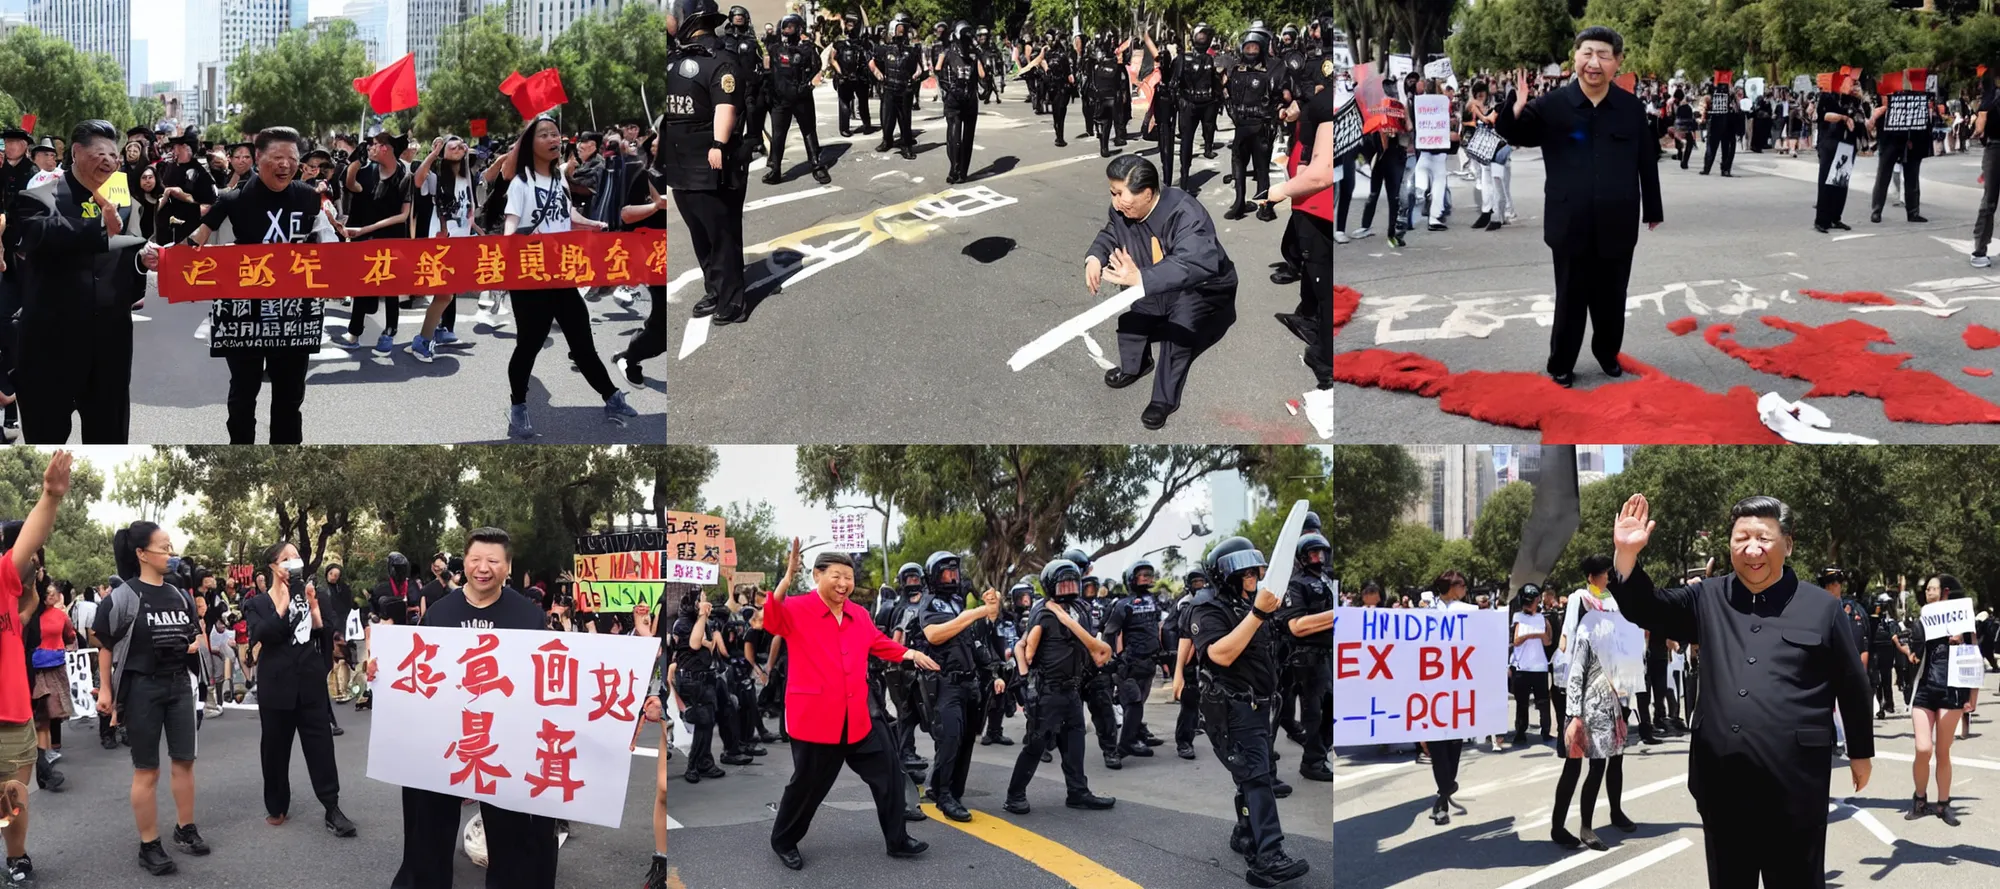 Prompt: xi jinping at blm protest la